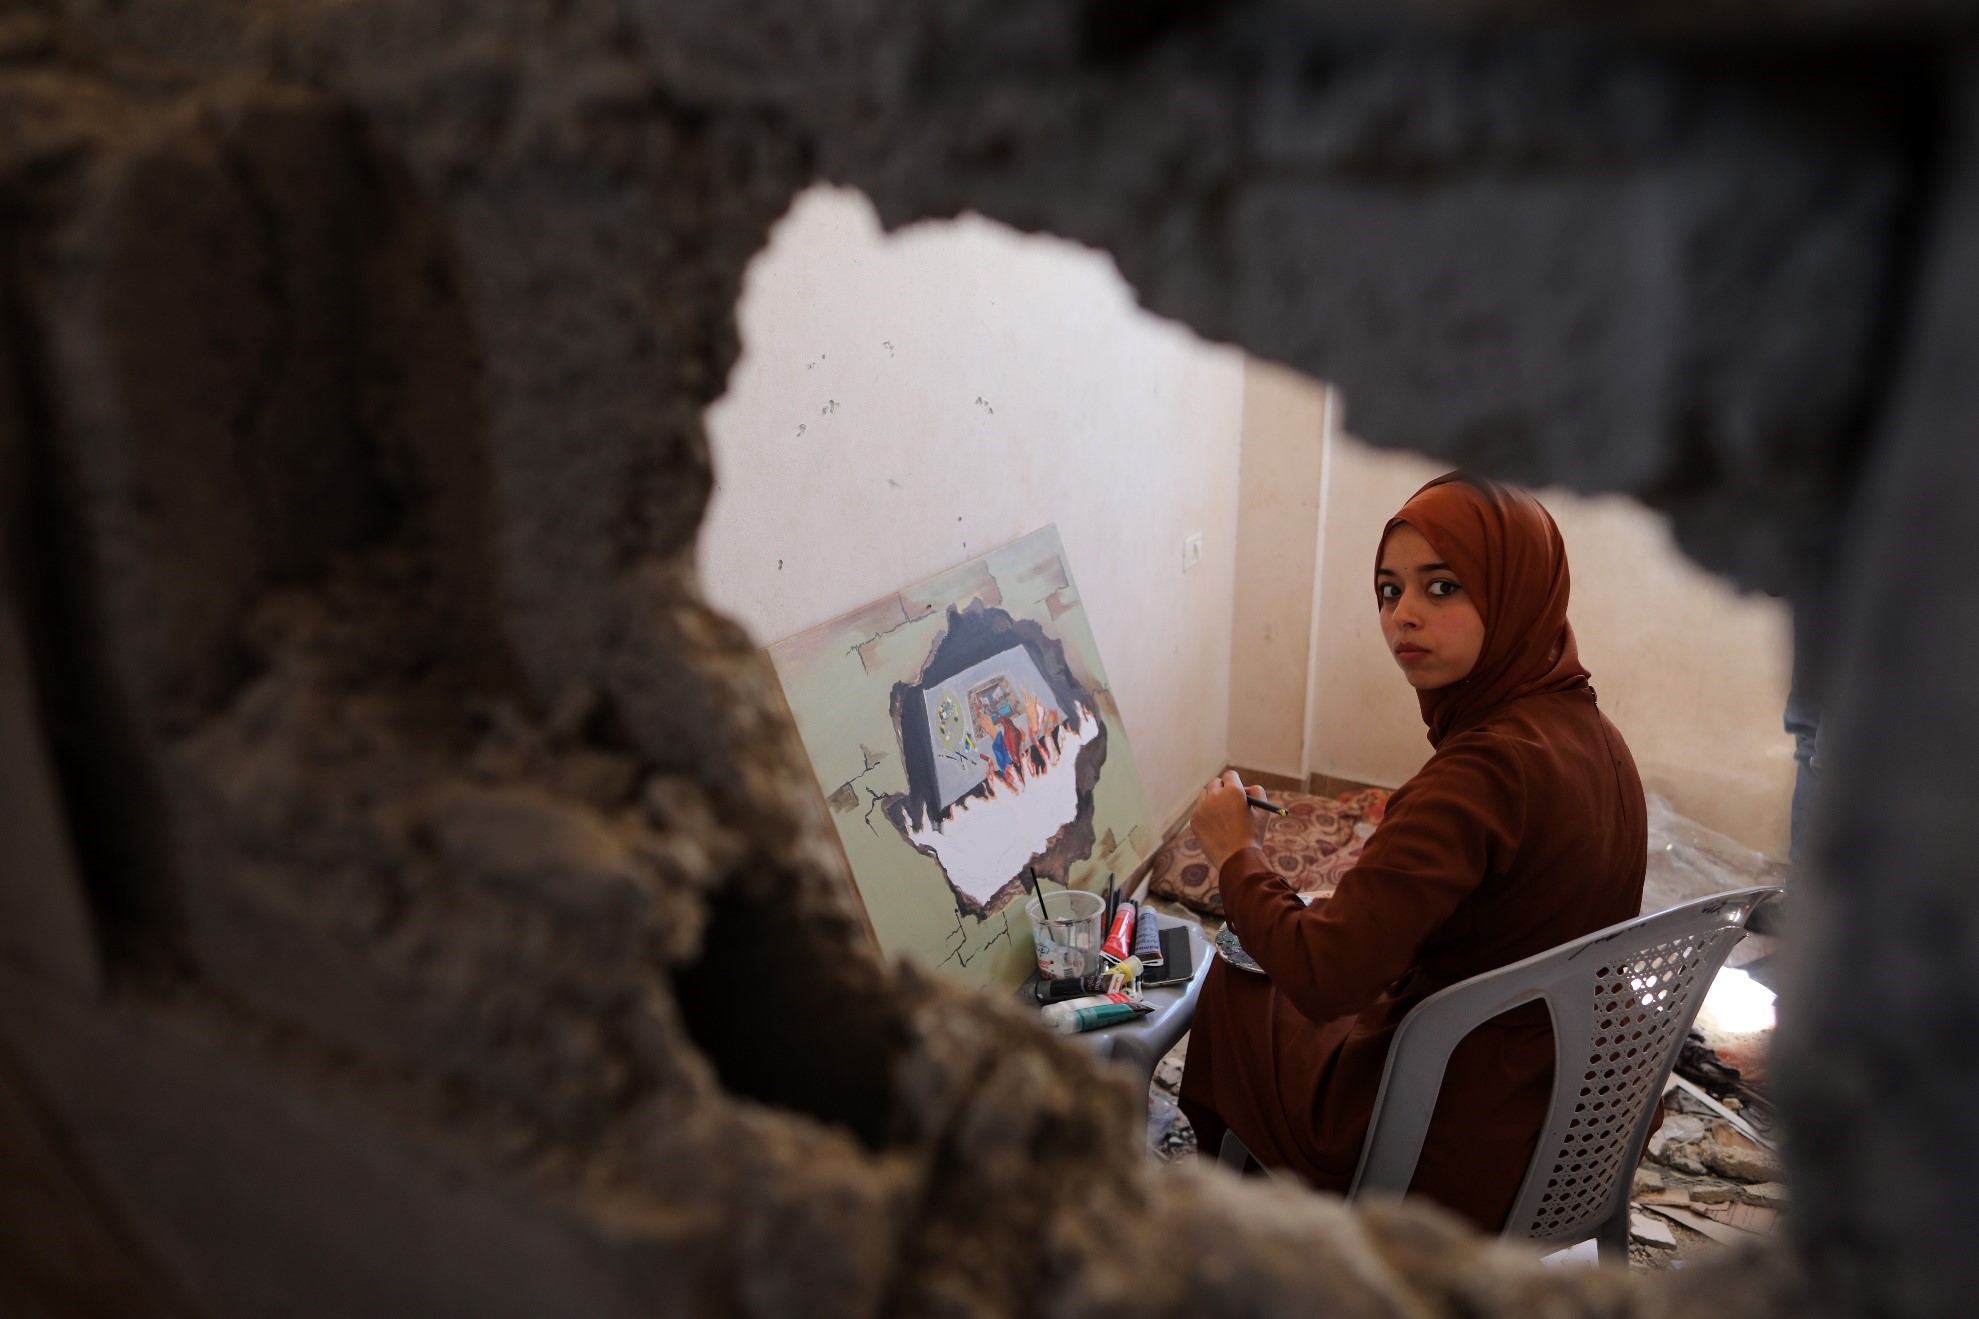  غزہ کی پٹی کے جنوبی شہر خان یونس میں ایک فلسطینی فنکارہ کو مقتول فنکار دونیانا الامور کے تباہ شدہ گھر میں مصوری کرتے ہوئے دیکھا جاسکتا ہے۔ (شِنہوا)